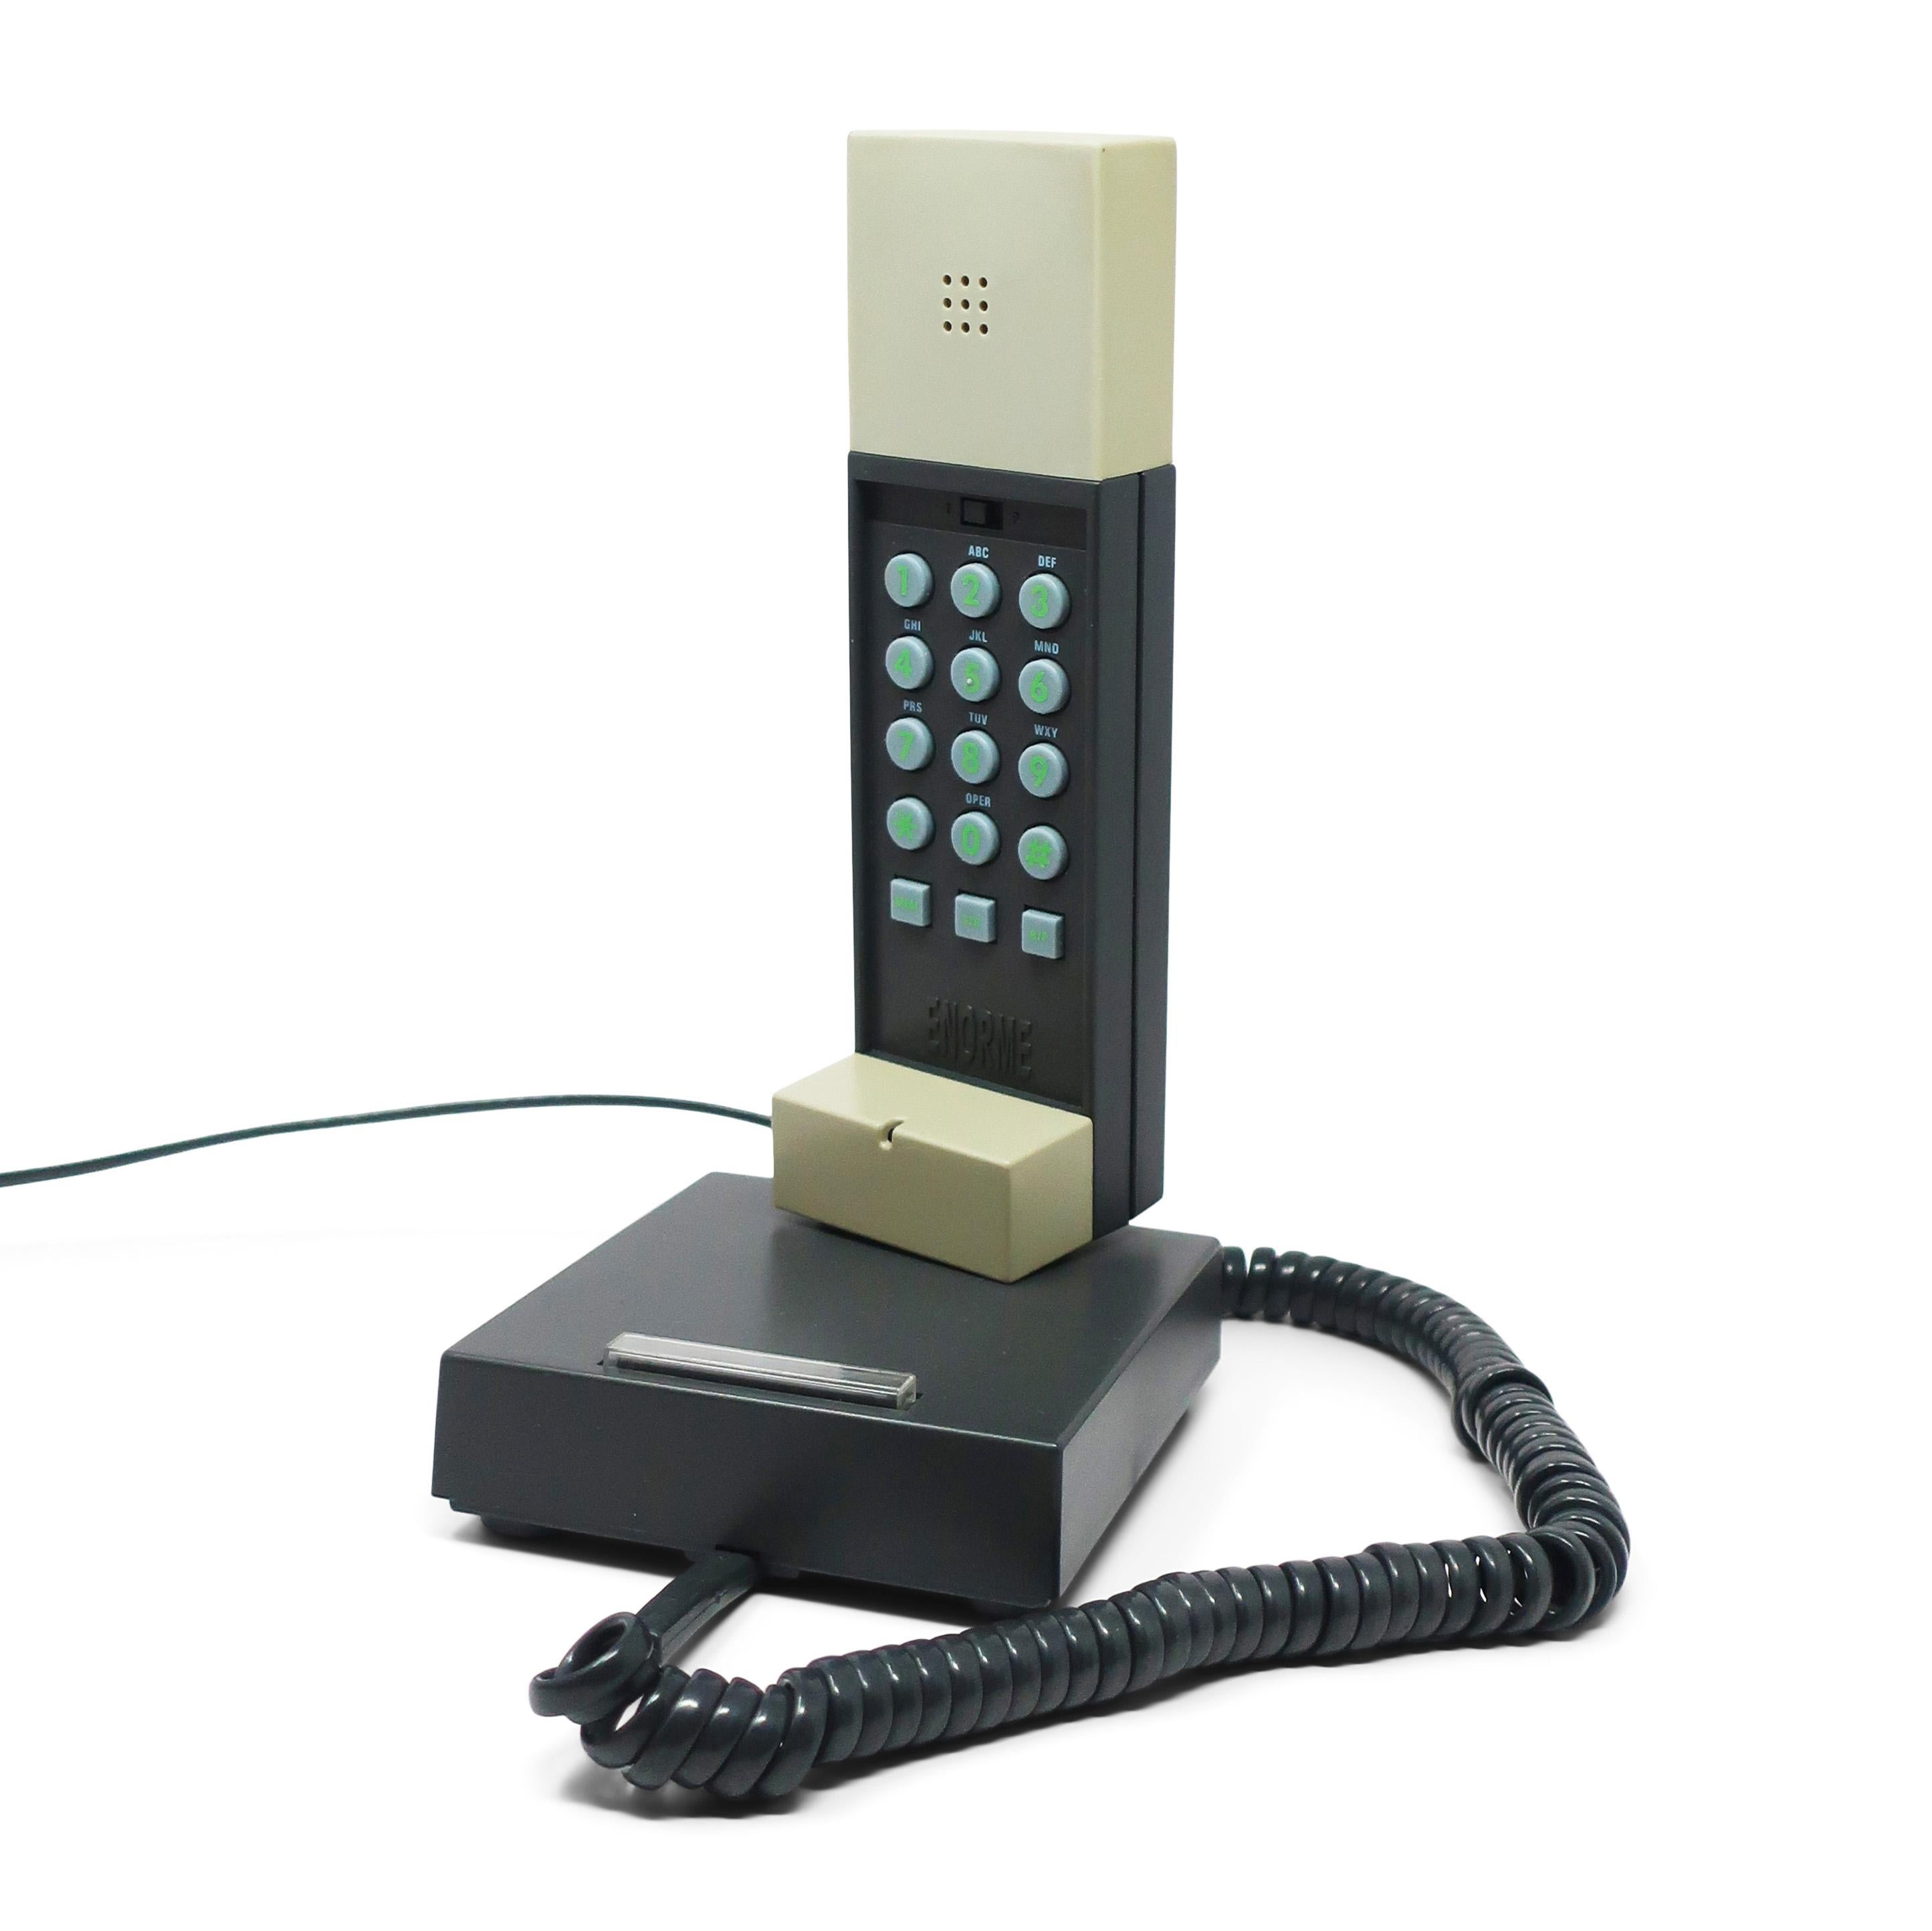 Ein perfektes postmodernes Telefon, entworfen von Ettore Sottsass, dem Meister von Memphis Milano, aus dem Jahr 1986.  Das Enorme-Telefon wurde in einer anderen Farbvariante produziert, aber dies ist die viel seltenere grau-schwarze Version.  Das